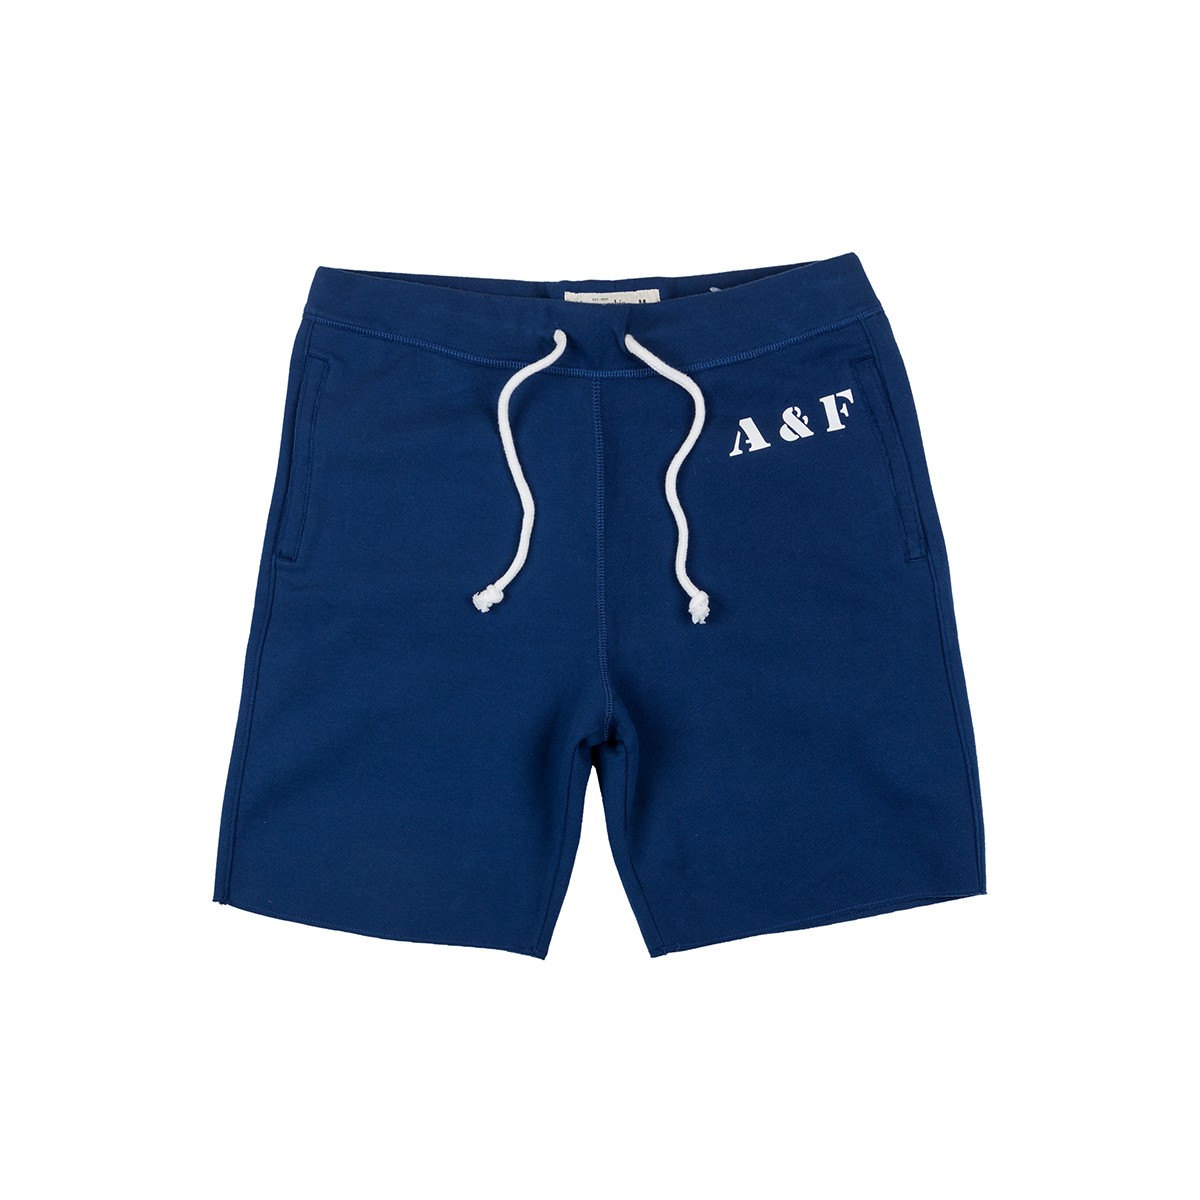 Спортивные шорты мужские - шорты для спорта Abercrombie & Fitch, M, M